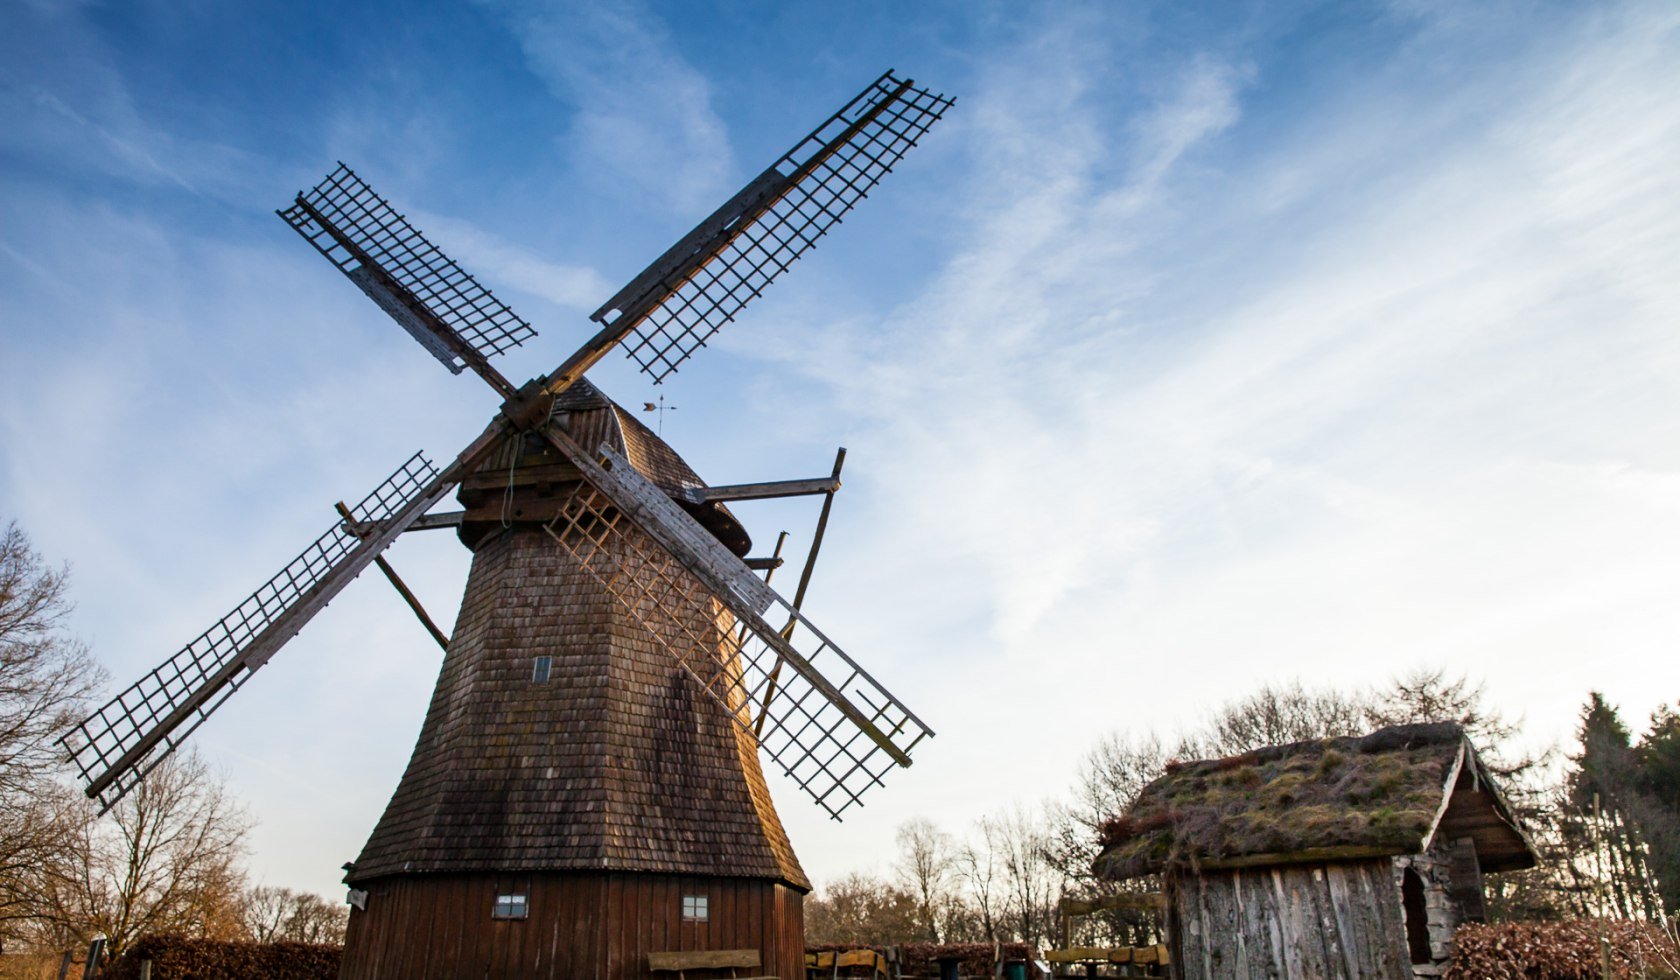 Gehlenberger Windmühle im Landkreis Cloppenburg, © malopo